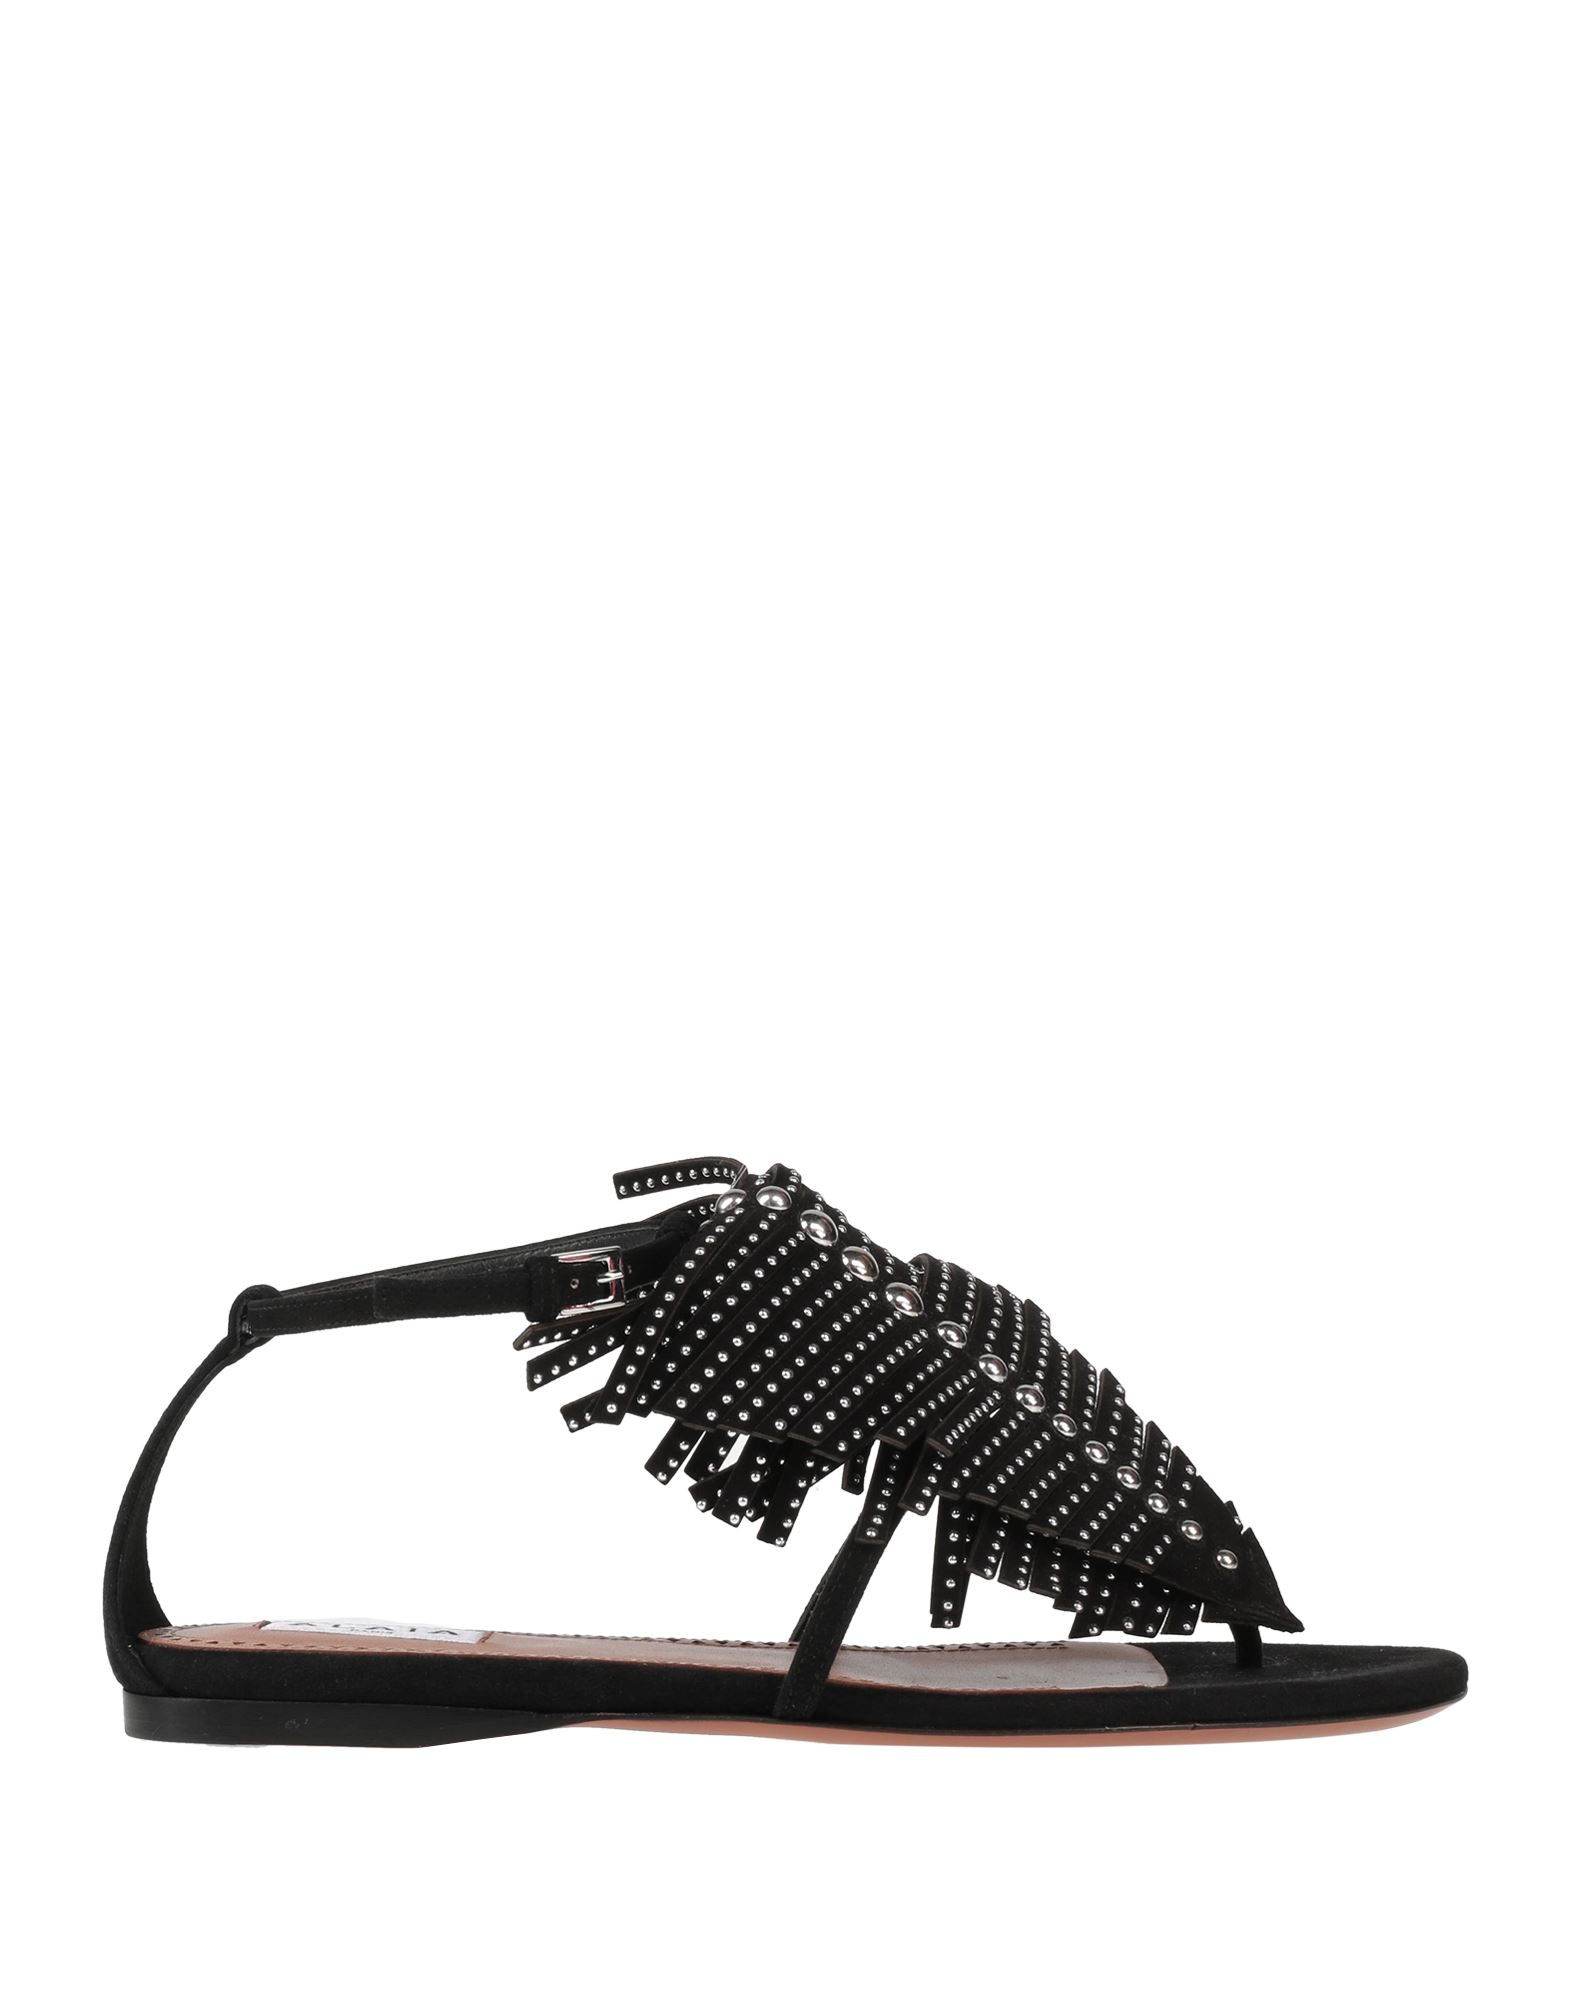 Alaïa Woman Thong Sandal Black Size 6 Leather